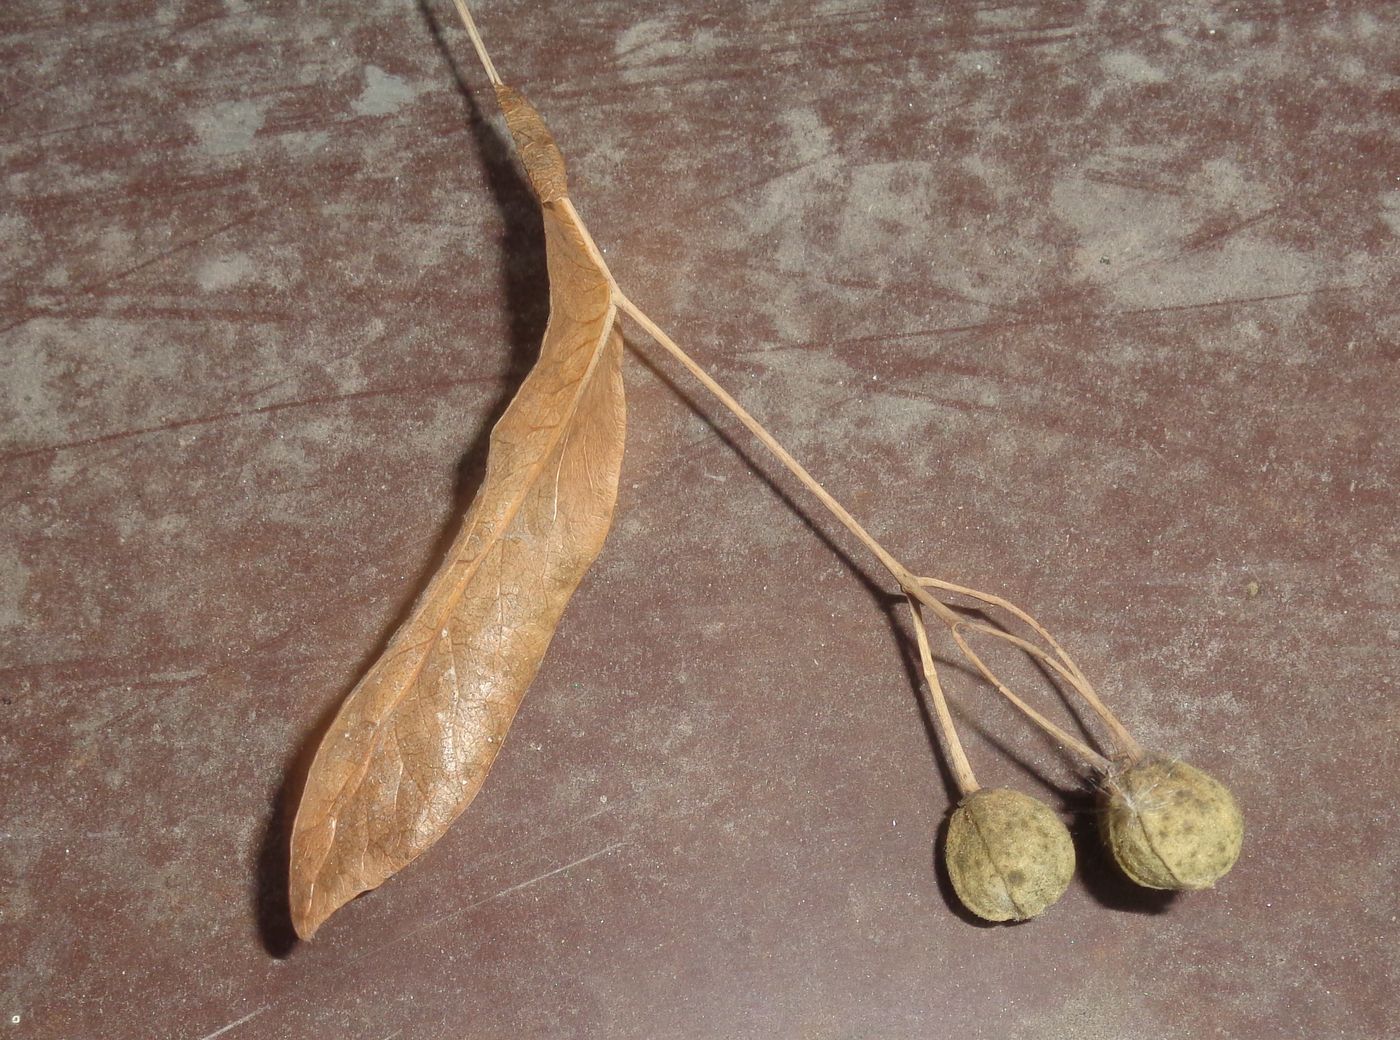 Image of genus Tilia specimen.